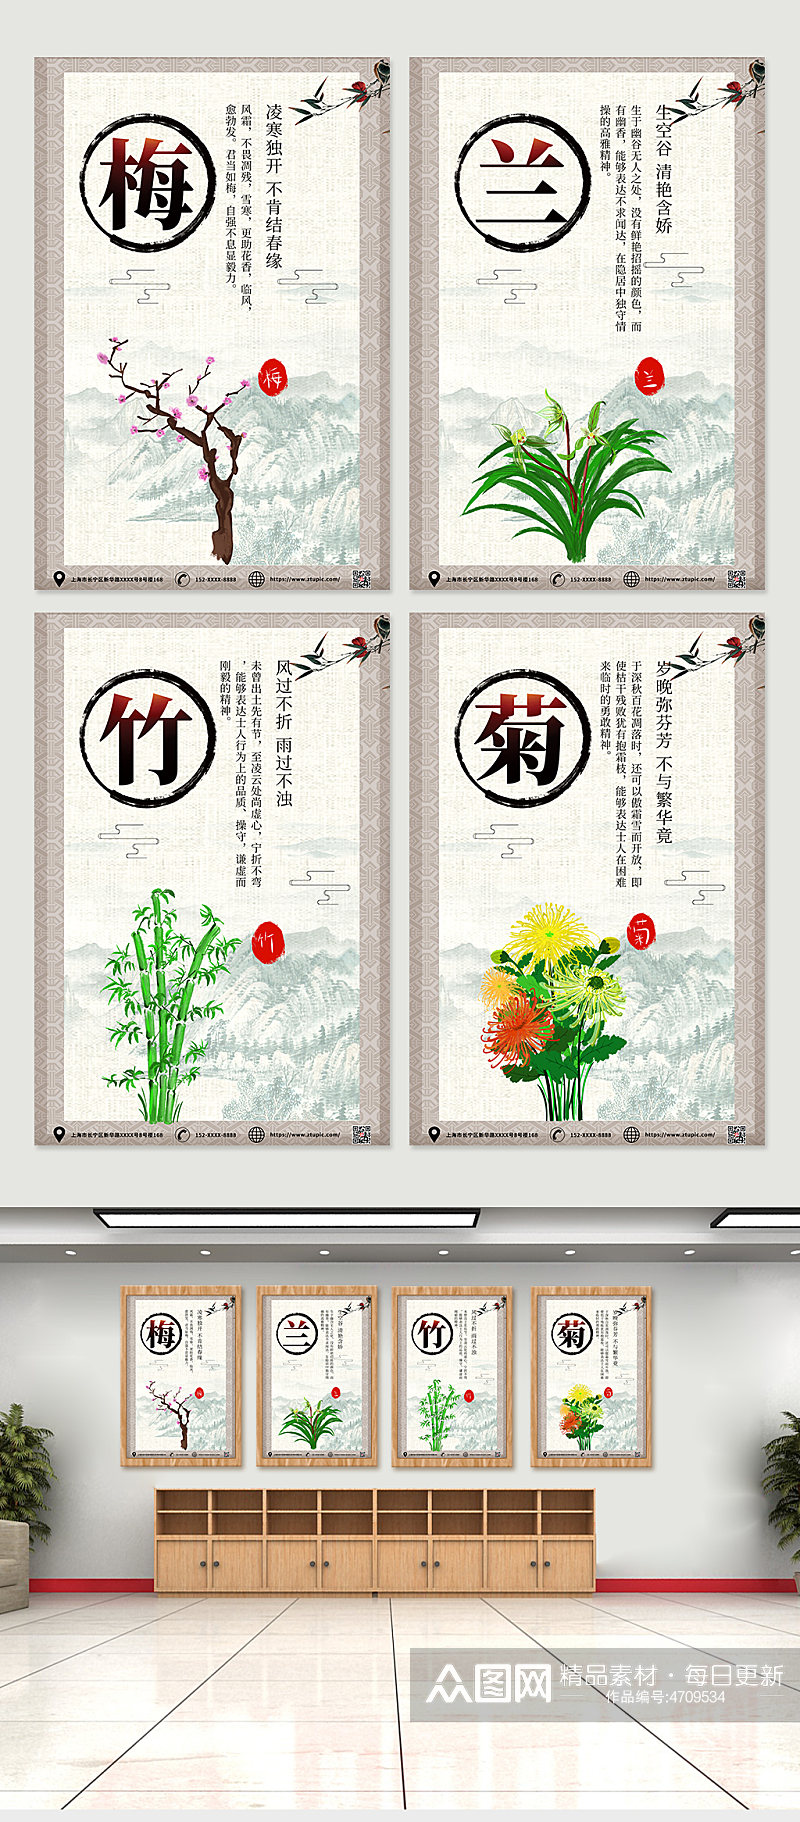 大气中国风梅兰竹菊系列海报素材